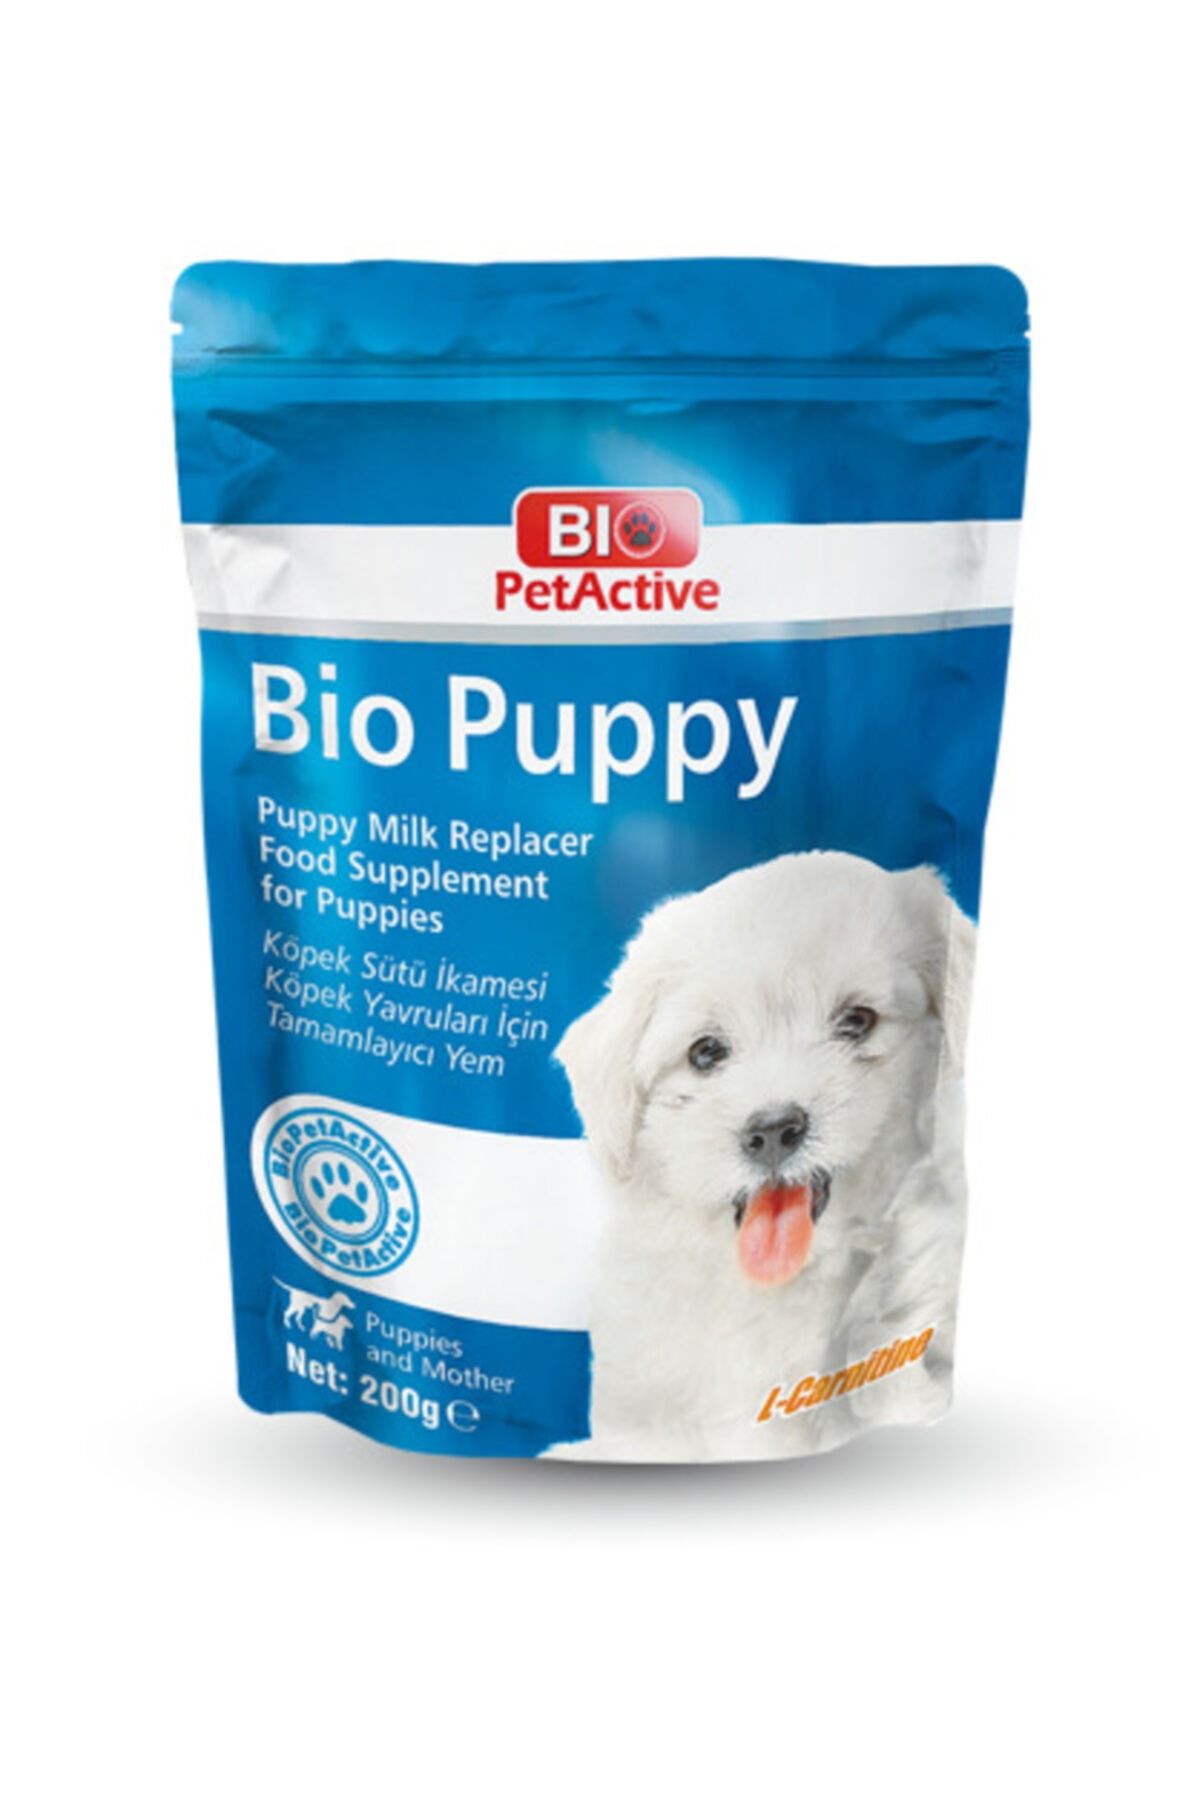 Bio PetActive Bio Puppy Milk Powder | Köpek Sütü Ikamesi Köpek Yavruları Için Tamamlayıcı Yem 200 G.